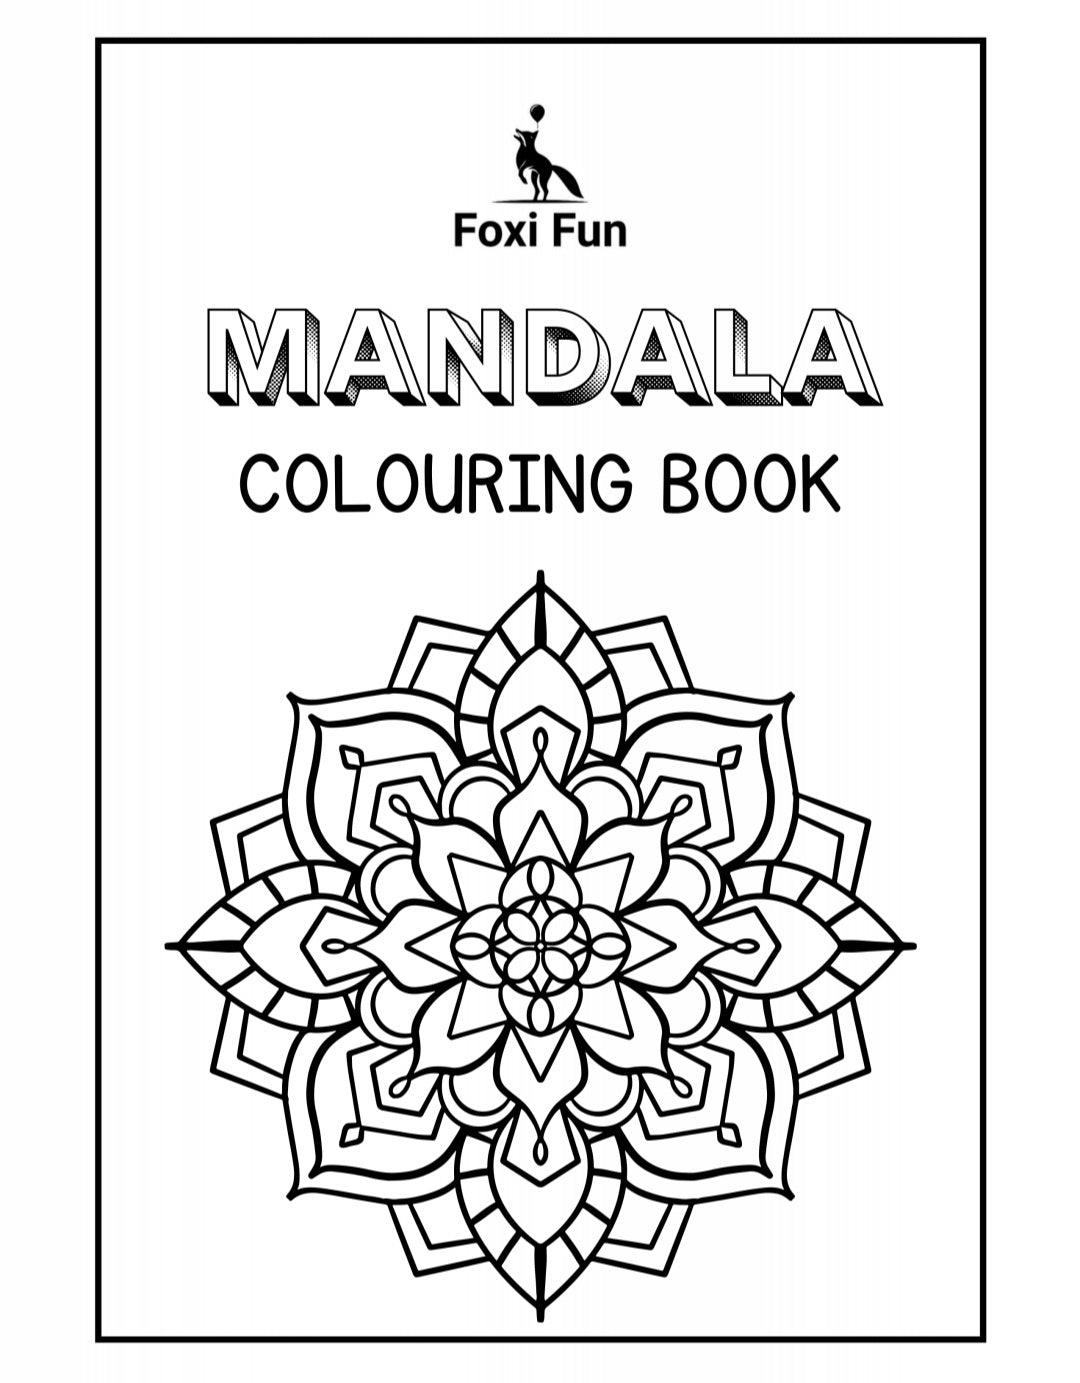 Foxi Fun Colouring Books